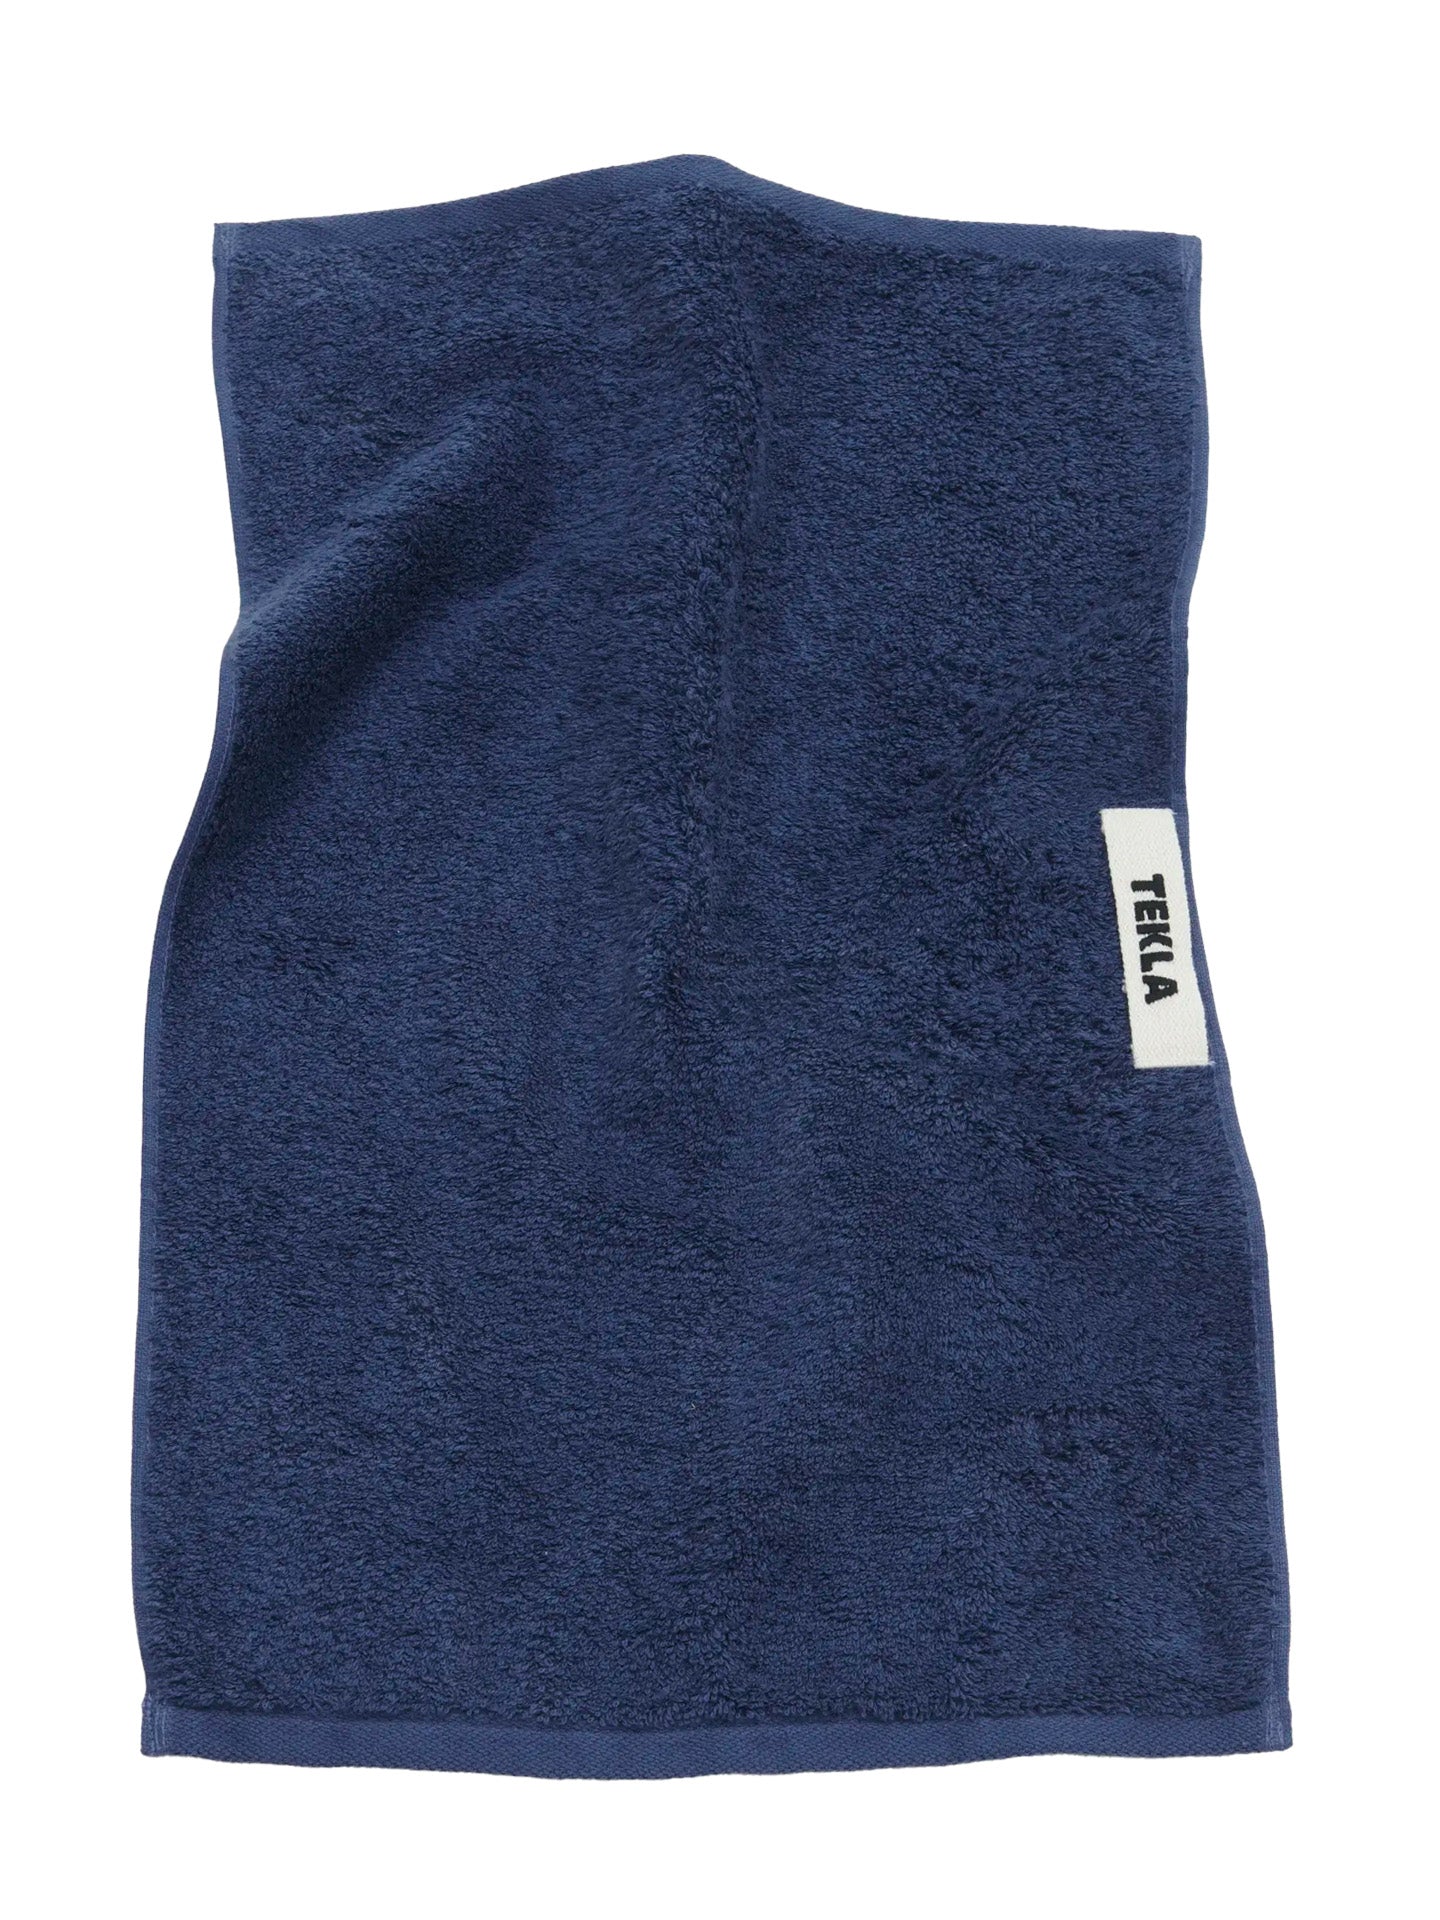 Terry Hand Towel, Navy